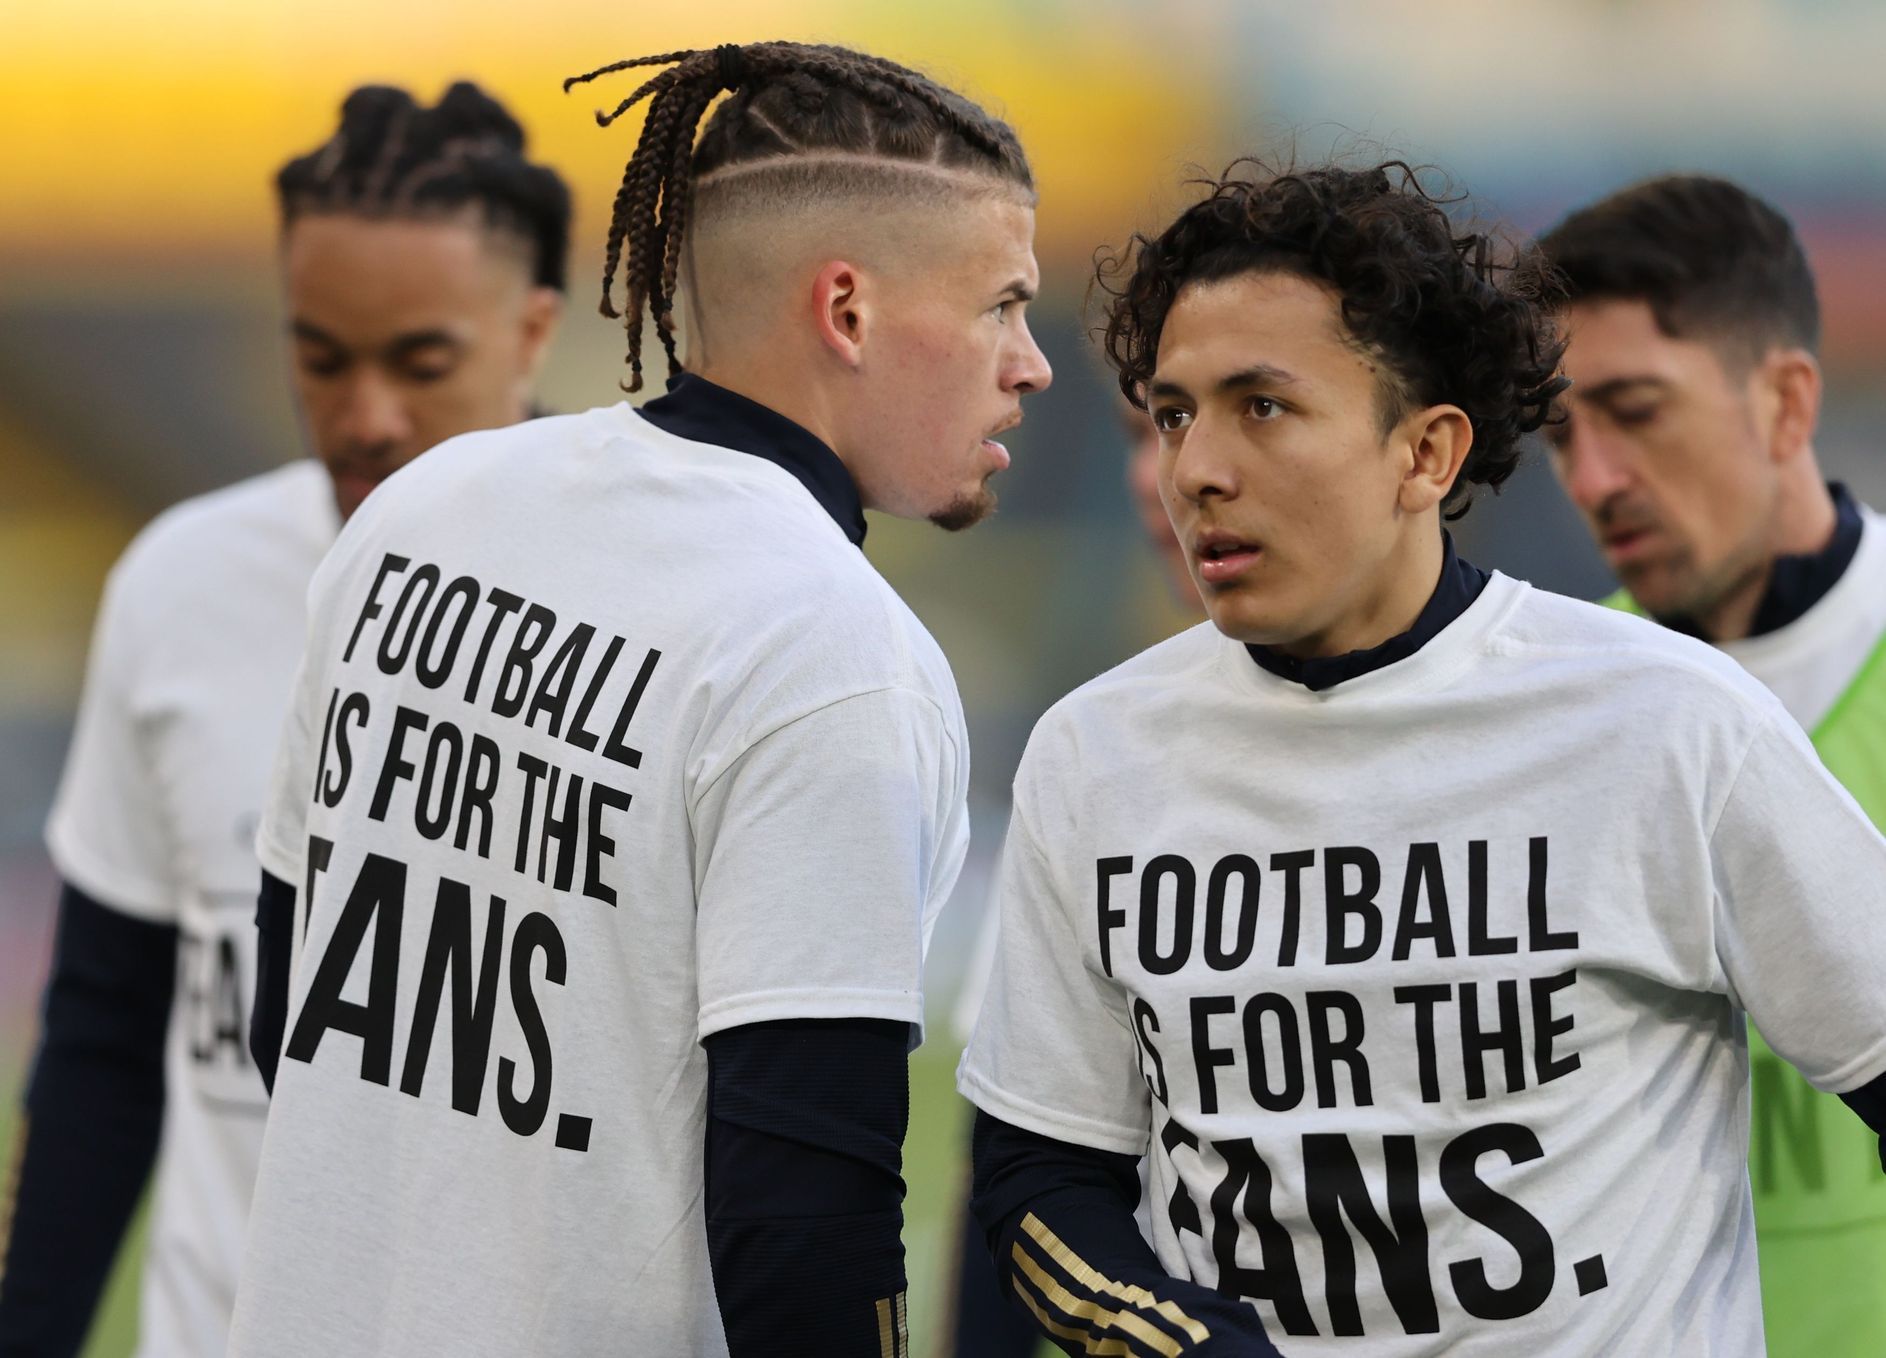 Protesty proti fotbalové superlize před dohrávkou 32. kola anglické ligy 2020/21 mezi Leedsem a Liverpoolem